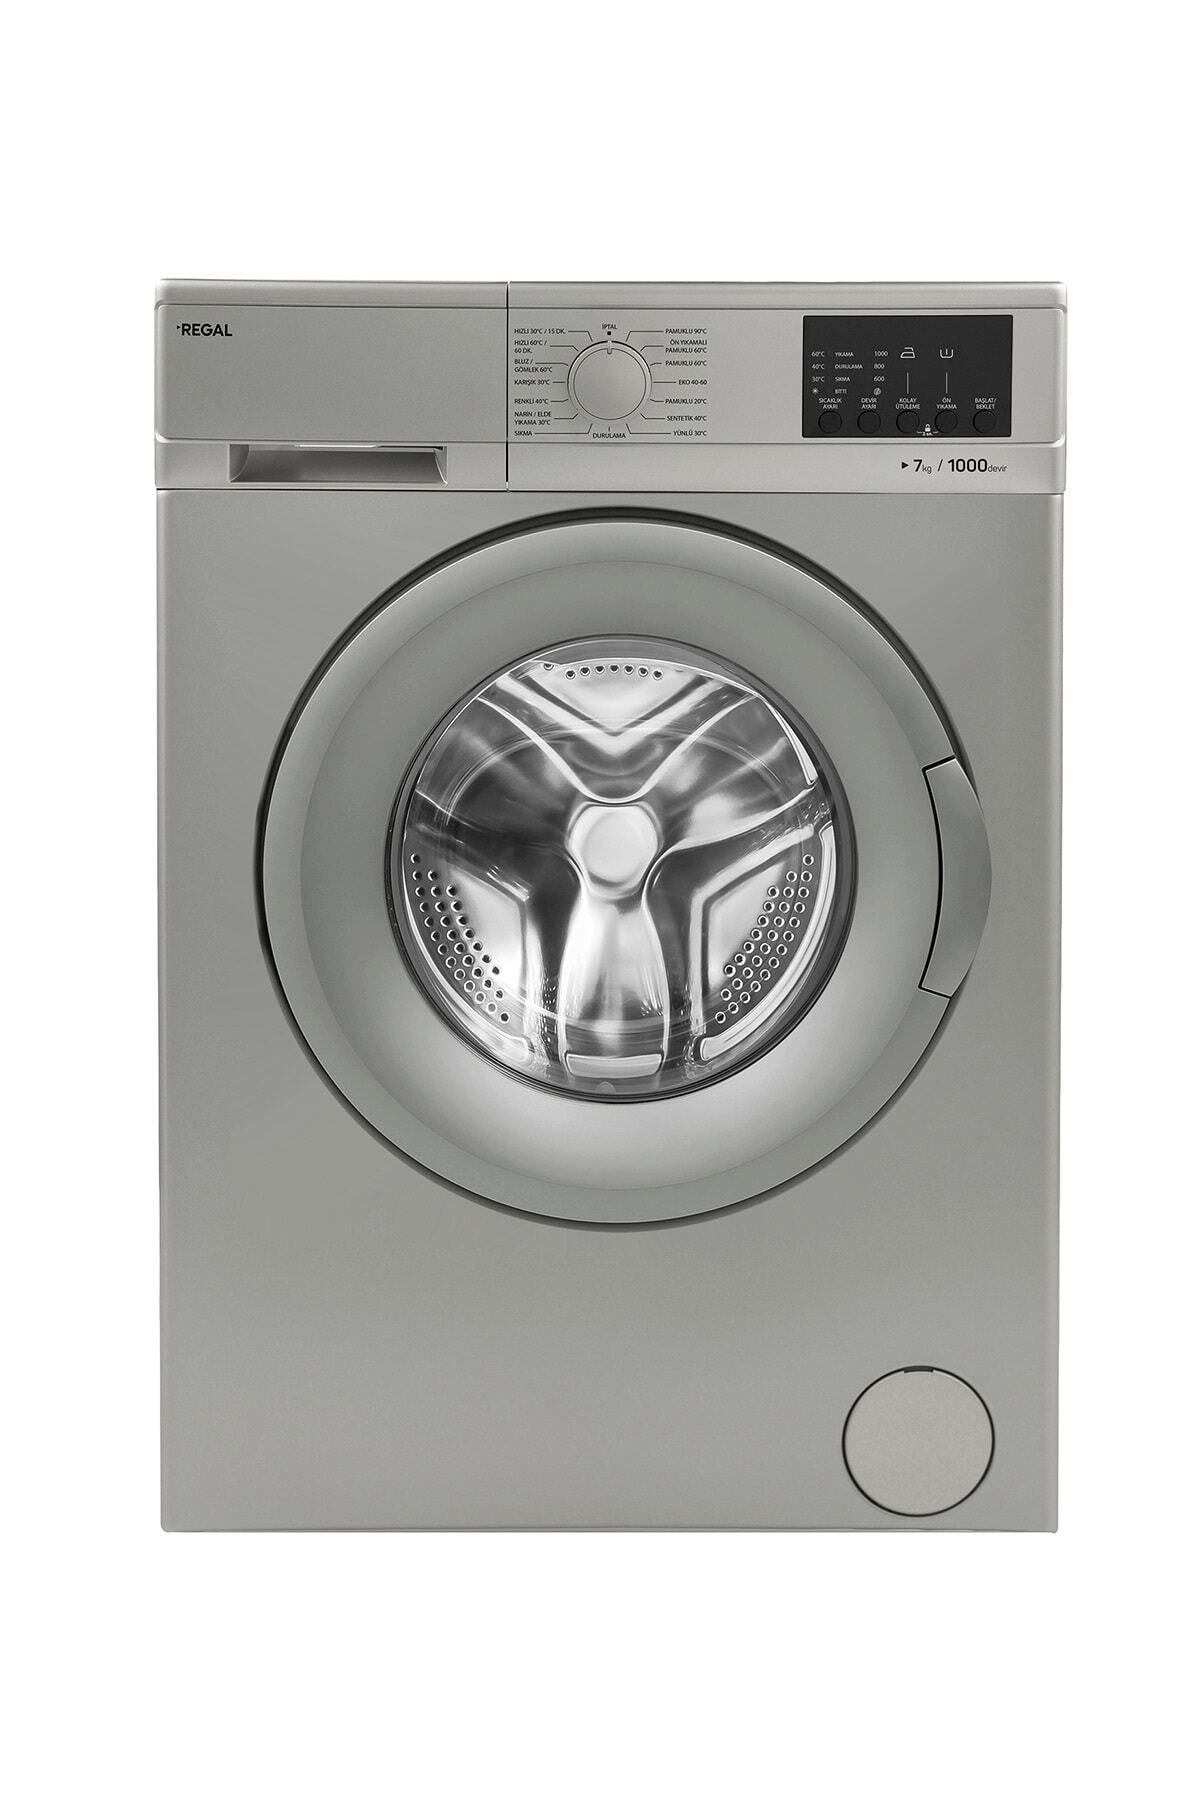 Regal Cmı 71001 Gy Çamaşır Makinesi